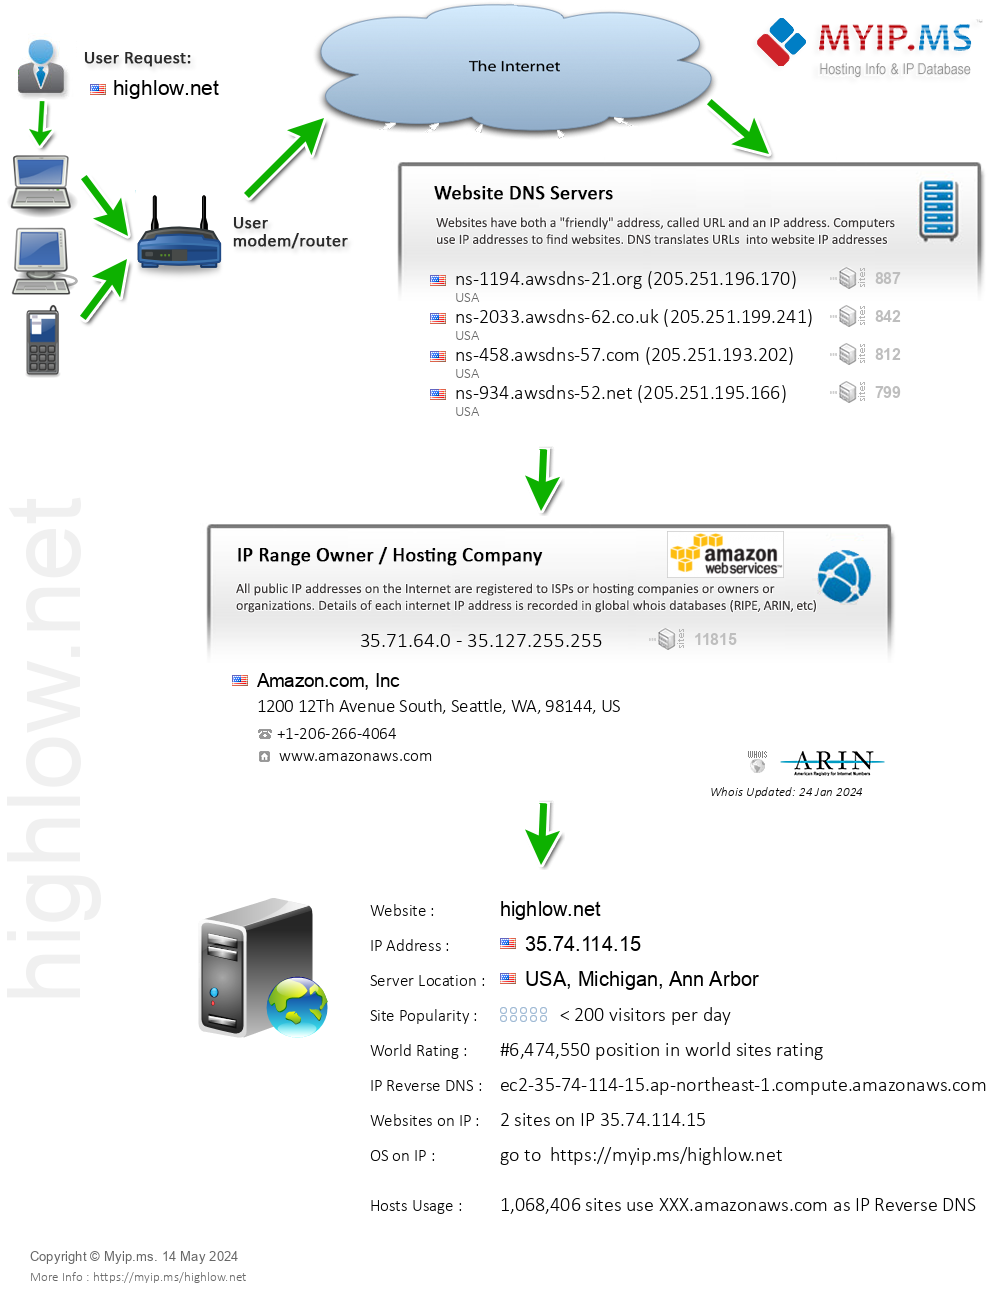 Highlow.net - Website Hosting Visual IP Diagram